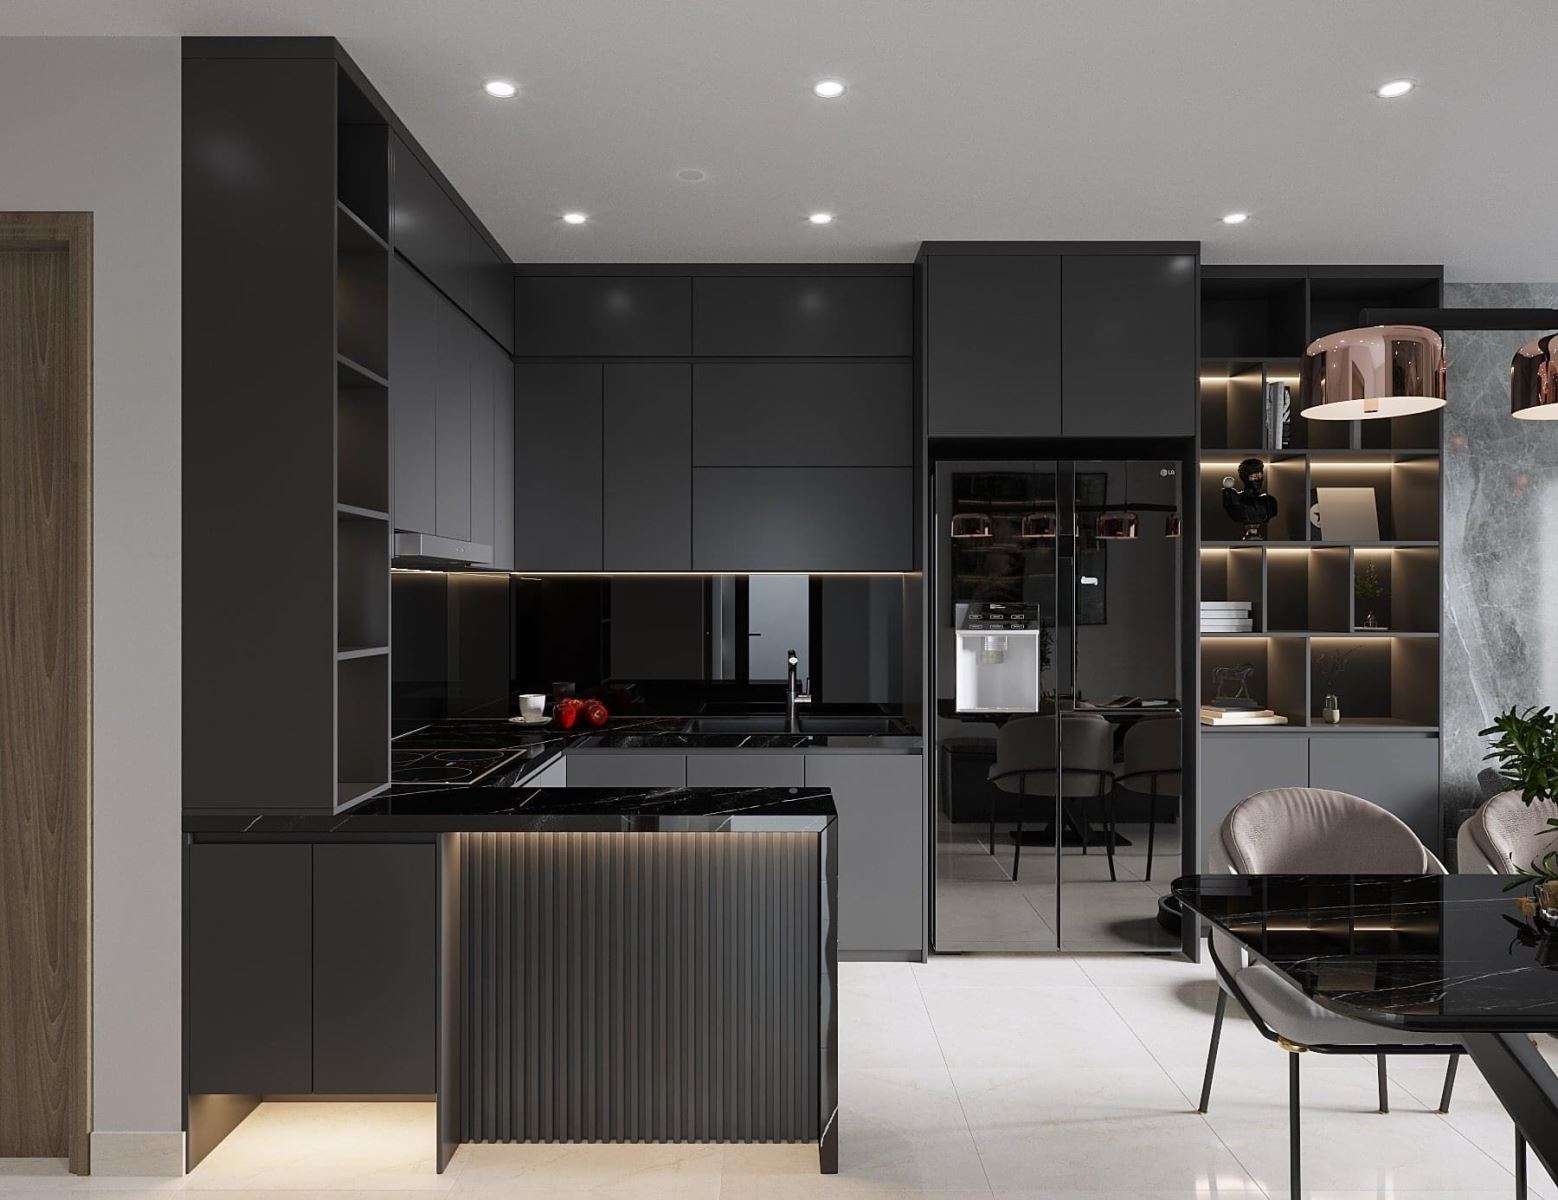 Tủ bếp Melamine màu đen mang lại sự ấm cúng và hiện đại